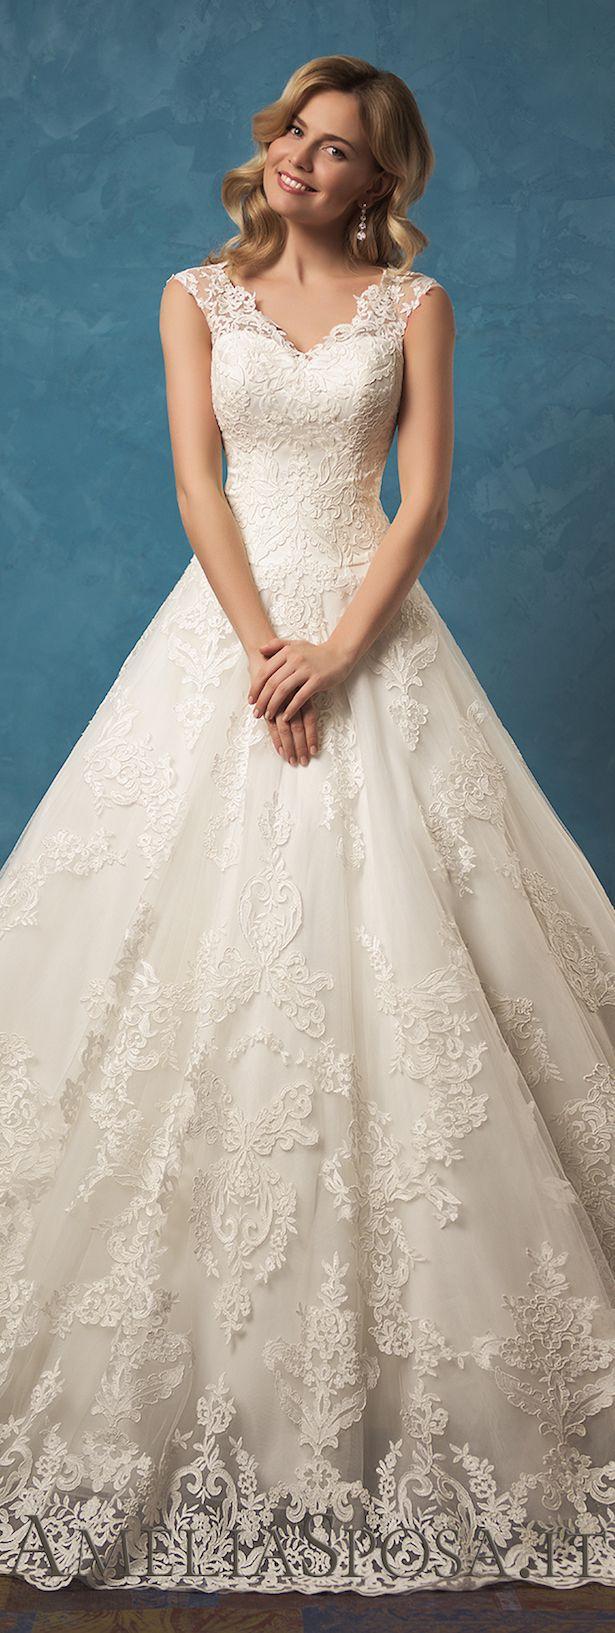 Hochzeit - Amelia Sposa 2017 Wedding Dress